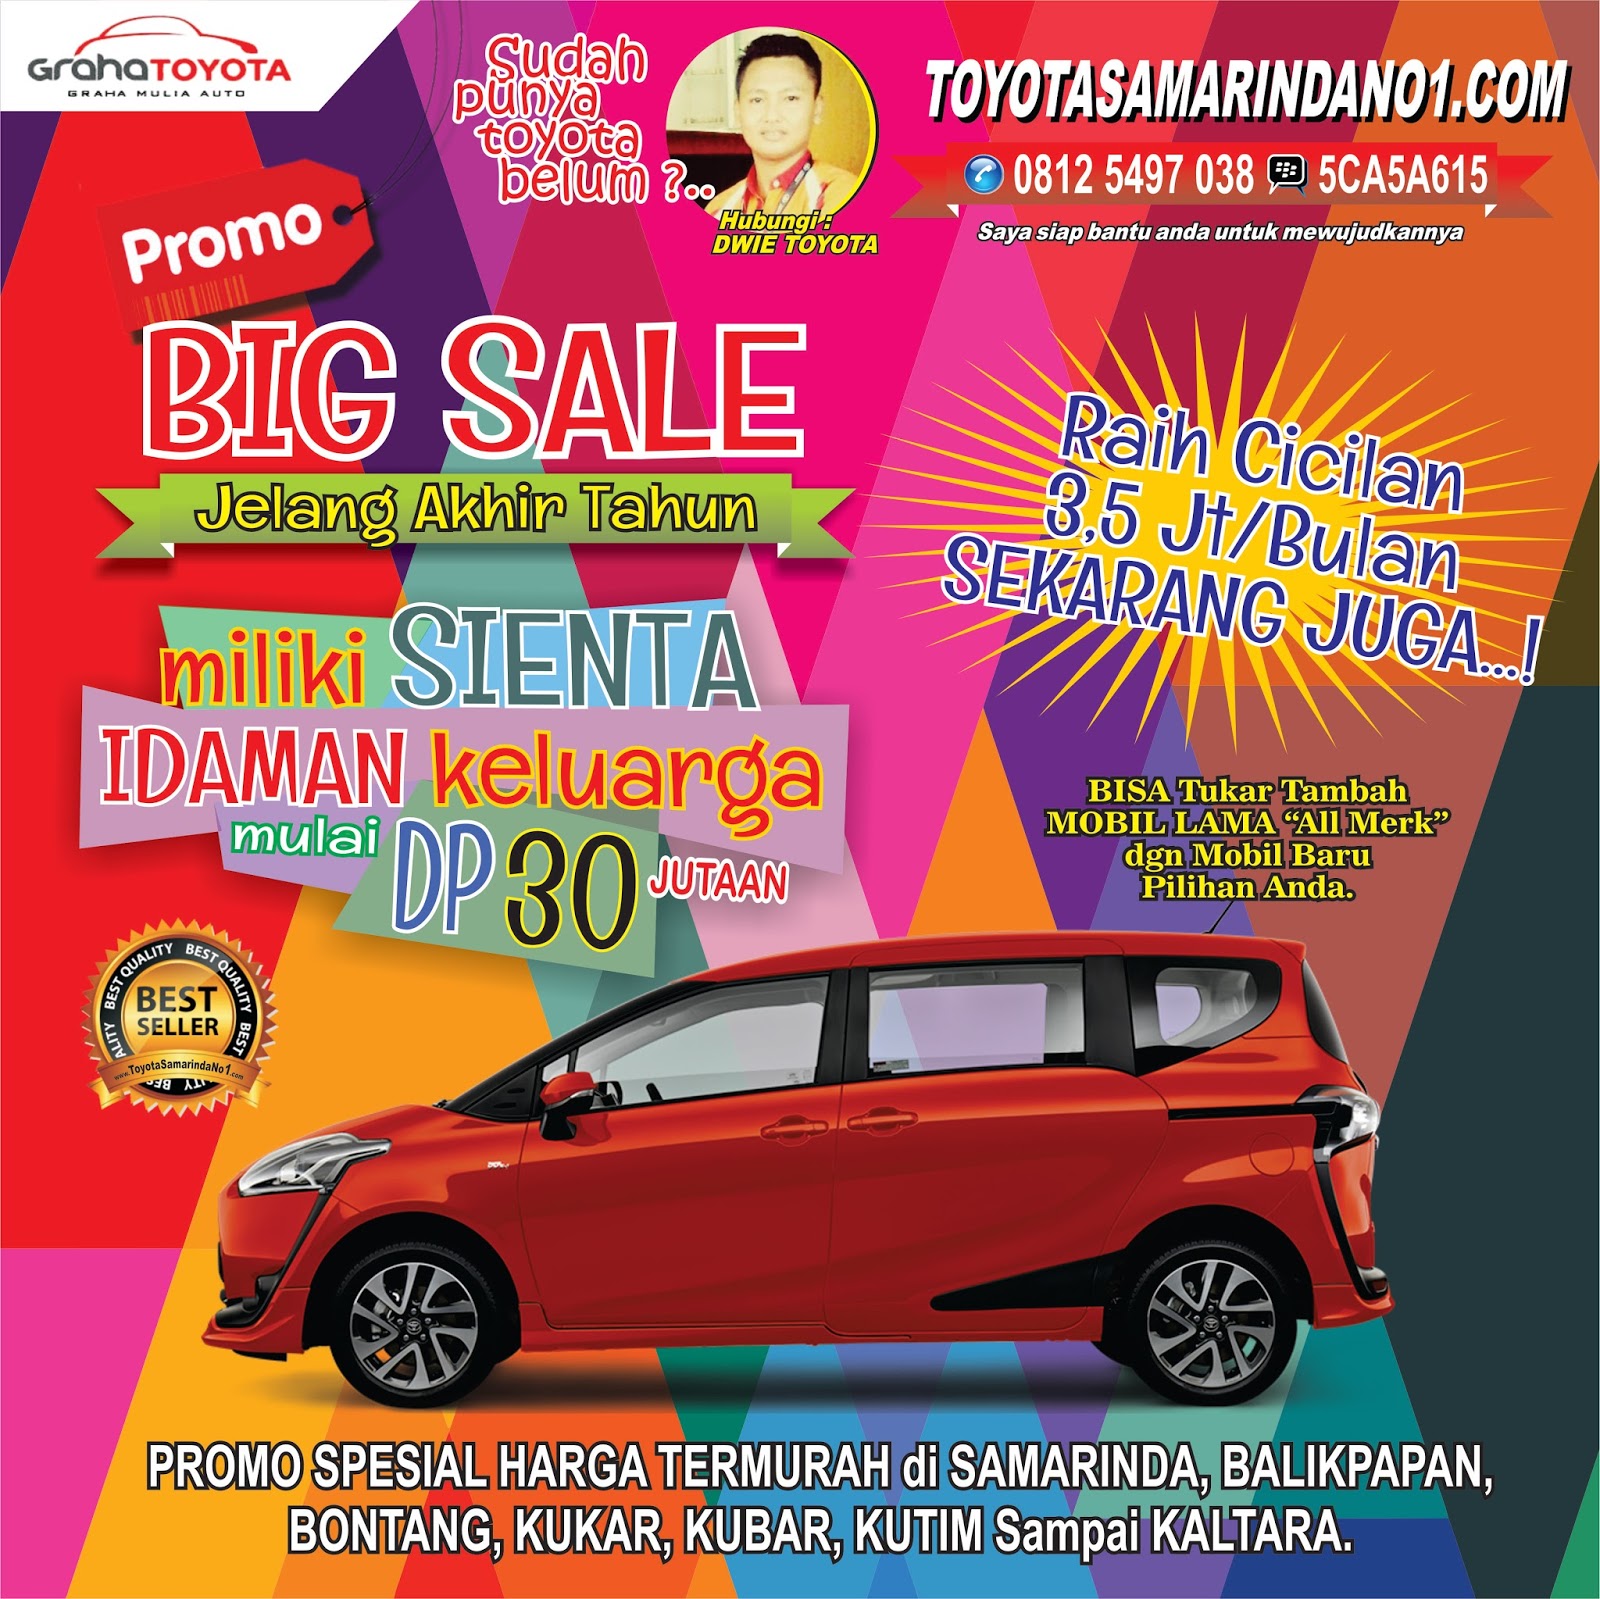 Big Sale Promo Jelang Akhir Tahun Bersama Toyota Samarinda No 1 Terlaris Di Kaltim